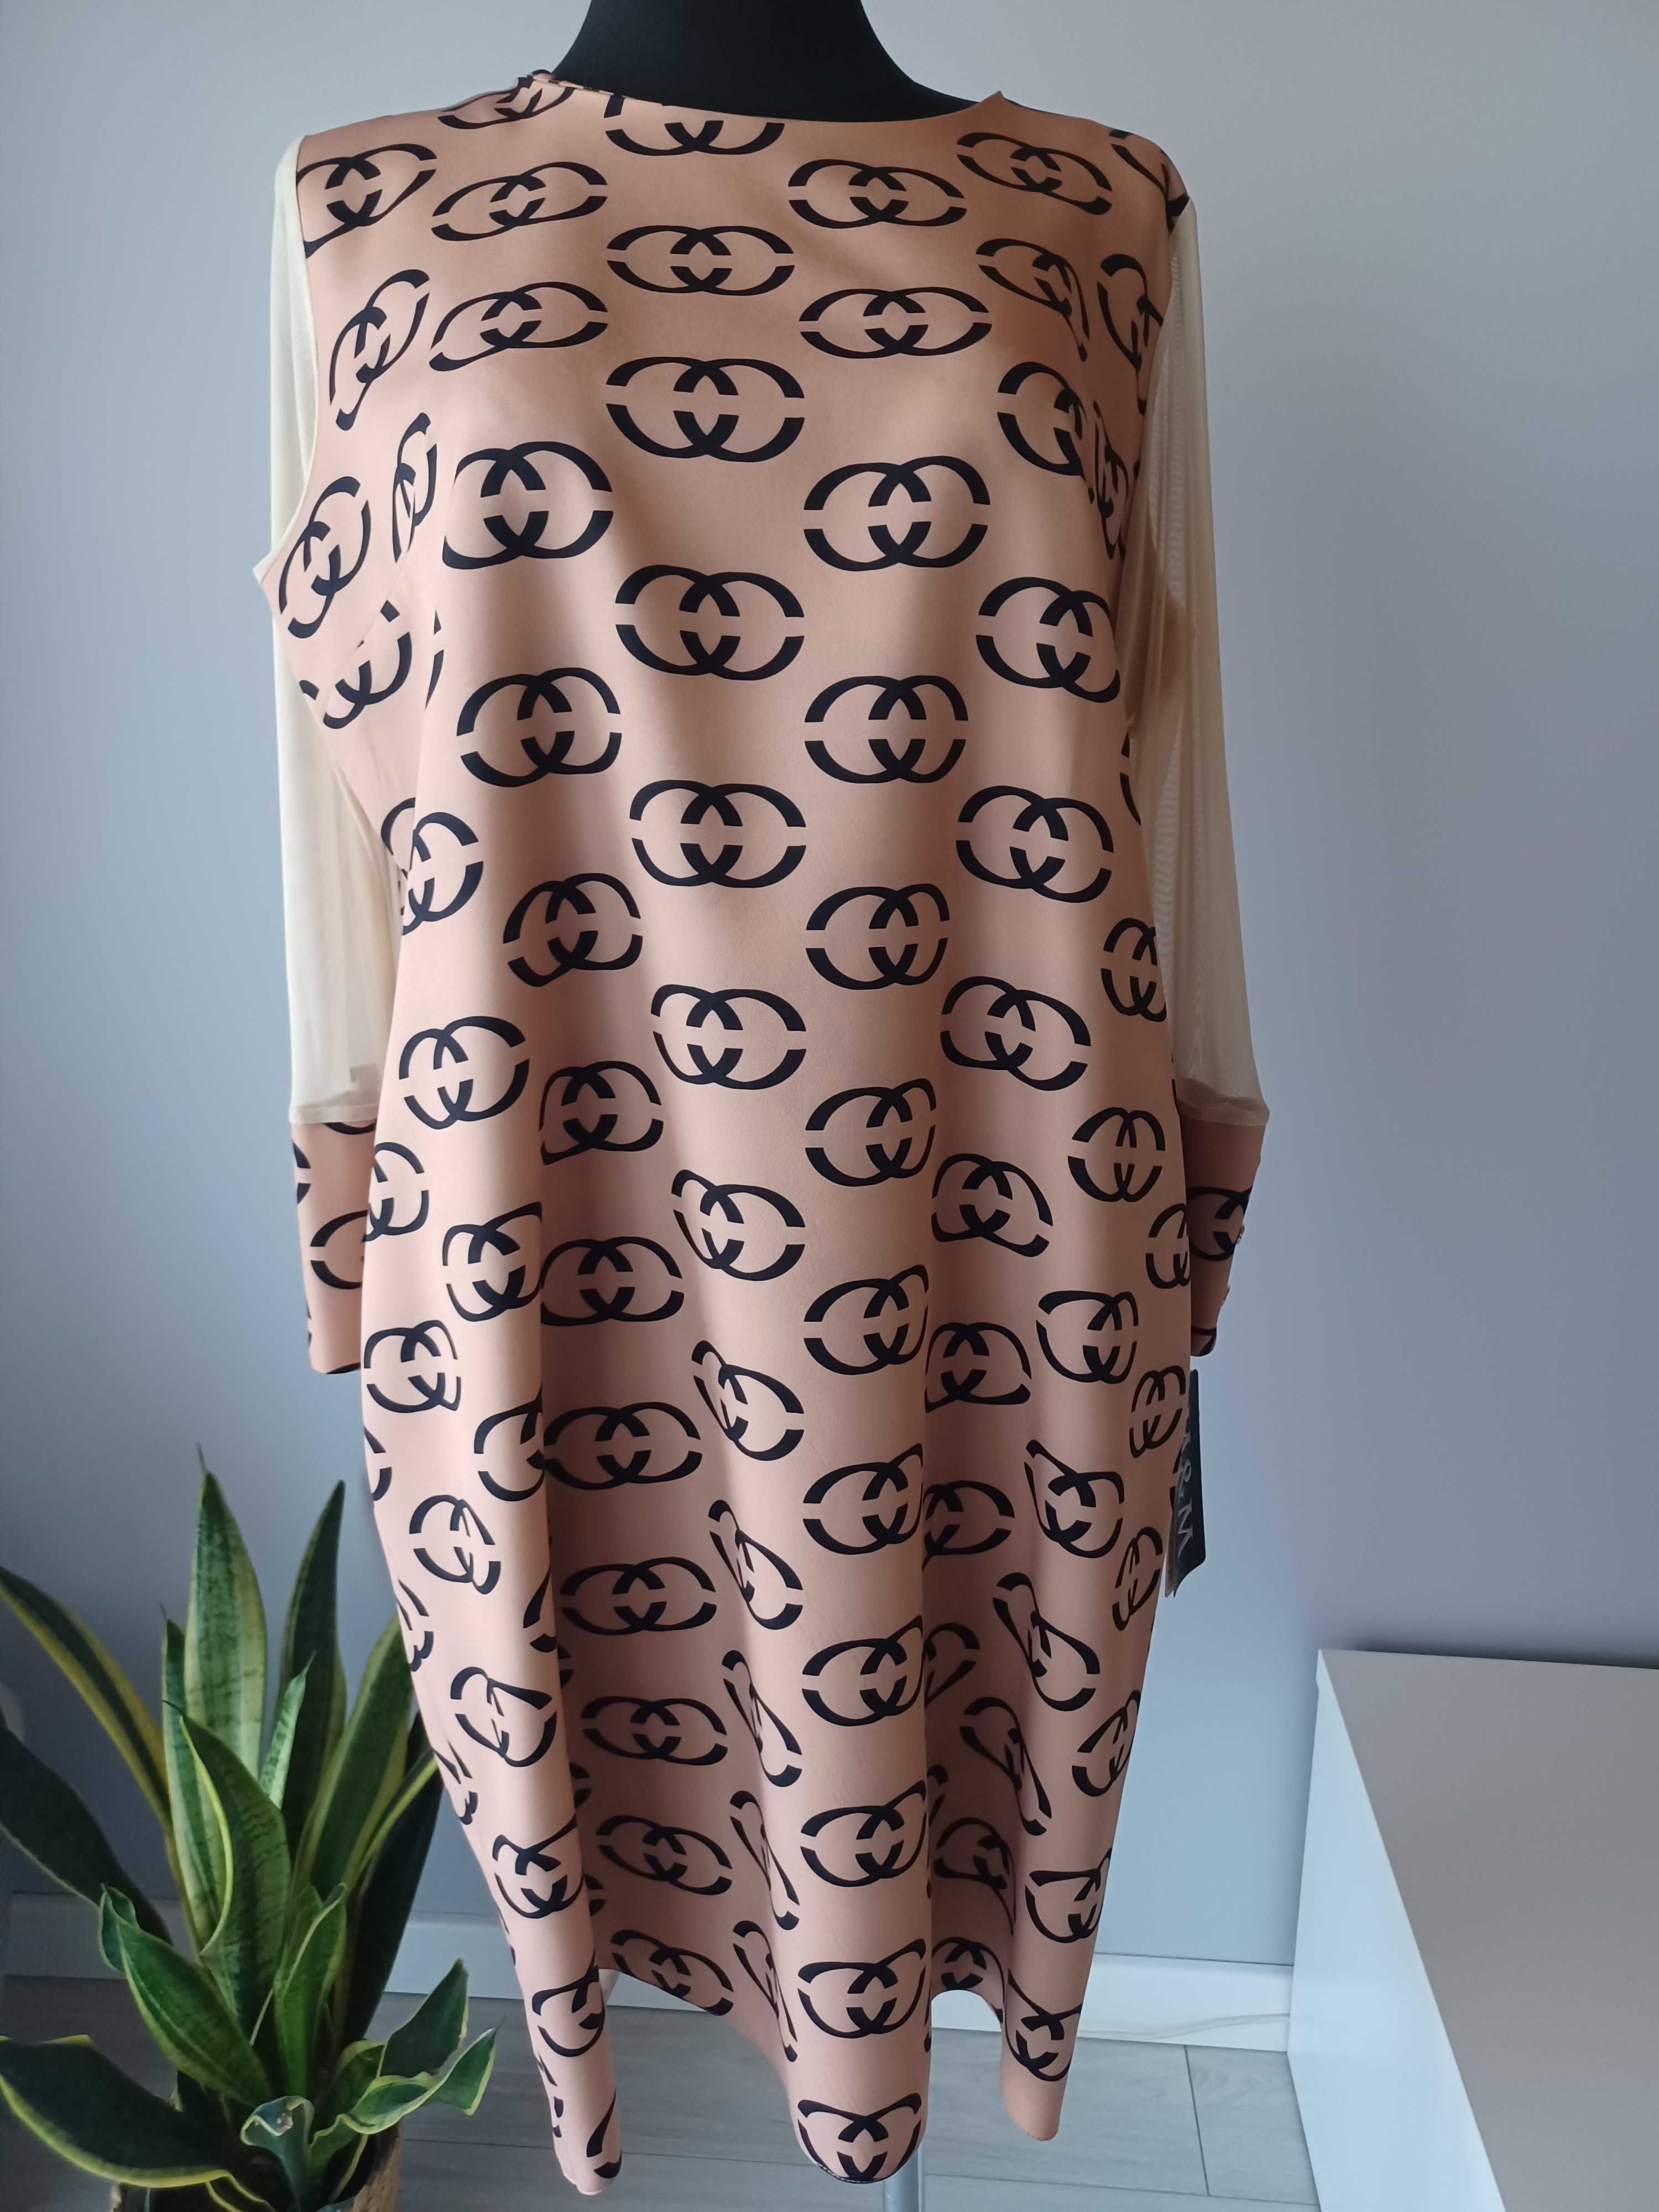 Sukienka wizytowa polska prosta klasyczna M&M rozmiar- 48